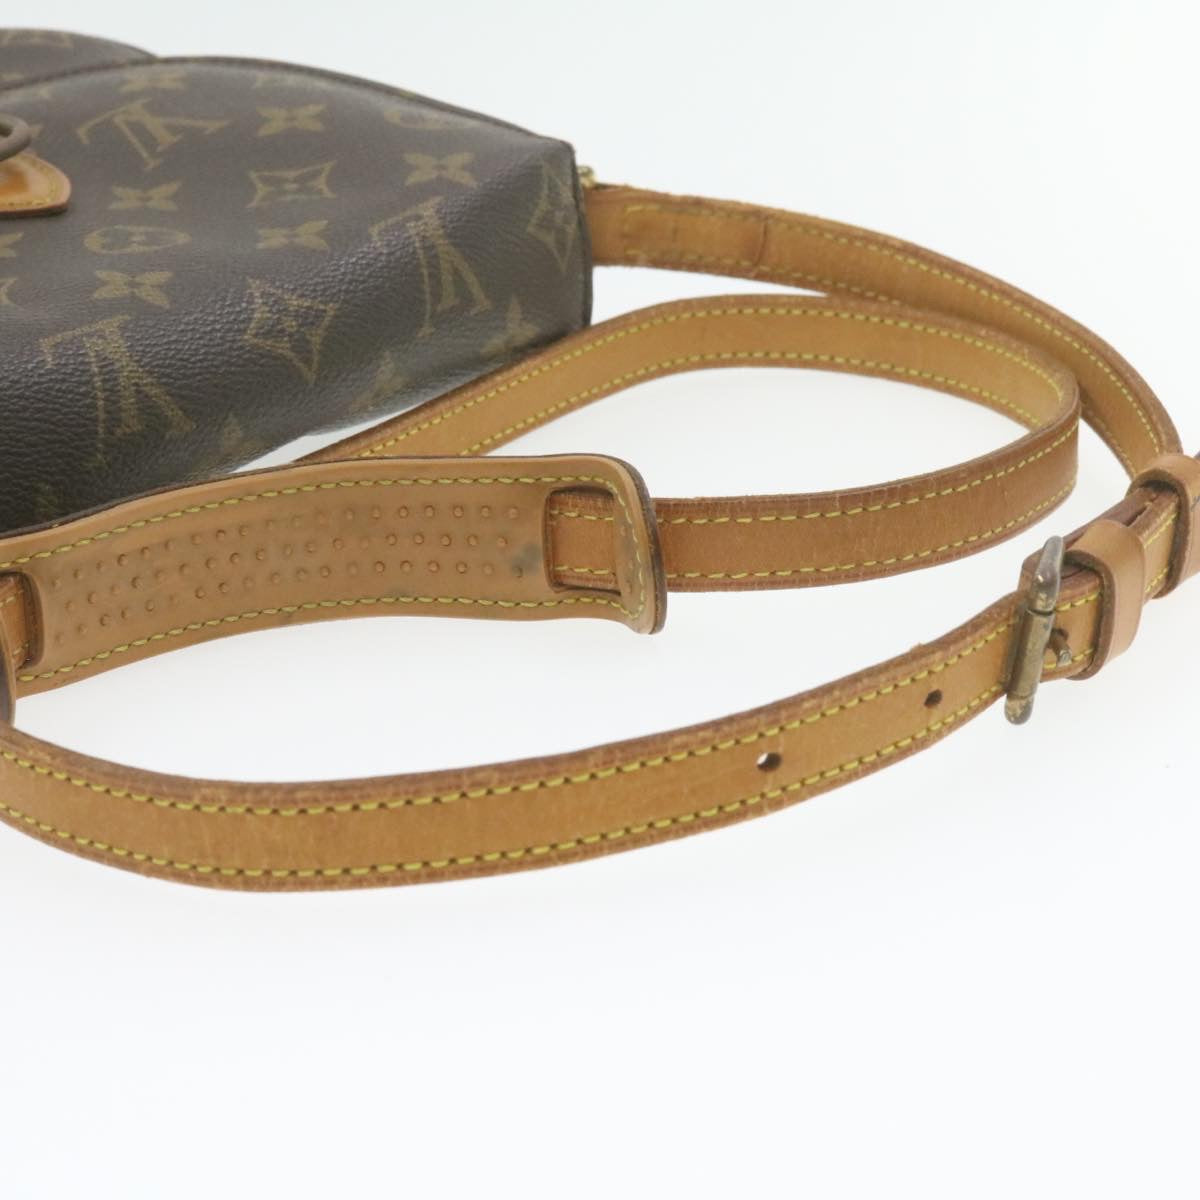 Vintage Louis Vuitton LV Saint Cloud MM Monogram M51243 Shoulder Bag - Nina  Furfur Vintage Boutique